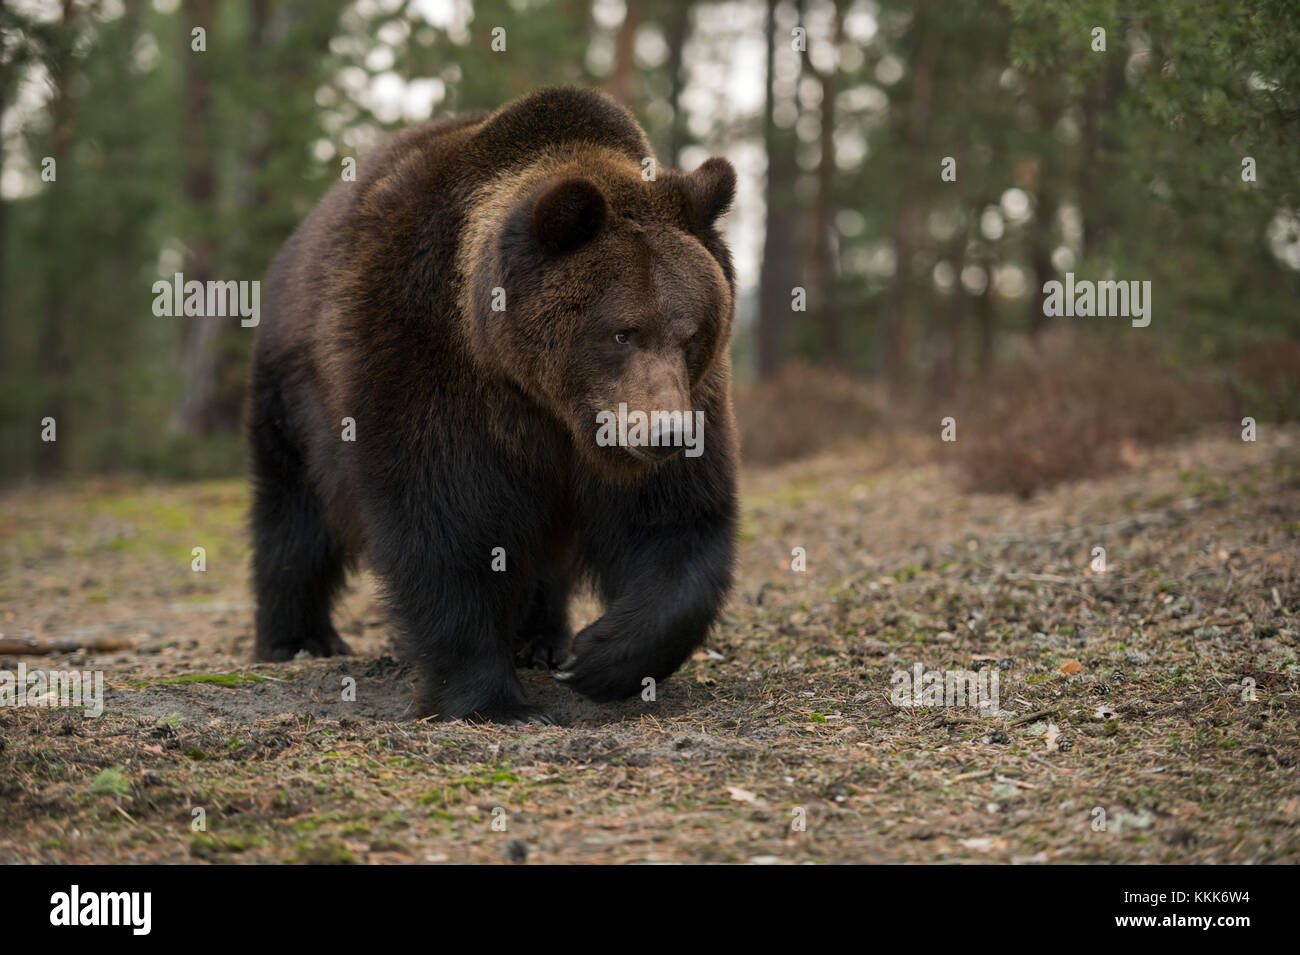 Eurasischer Braunbär / Europäischer braunbaer ( Ursus arctos ) Spaziergang durch einen offenen Wald, beeindruckende Begegnung, scheint entspannt zu sein, Europa. Stockfoto